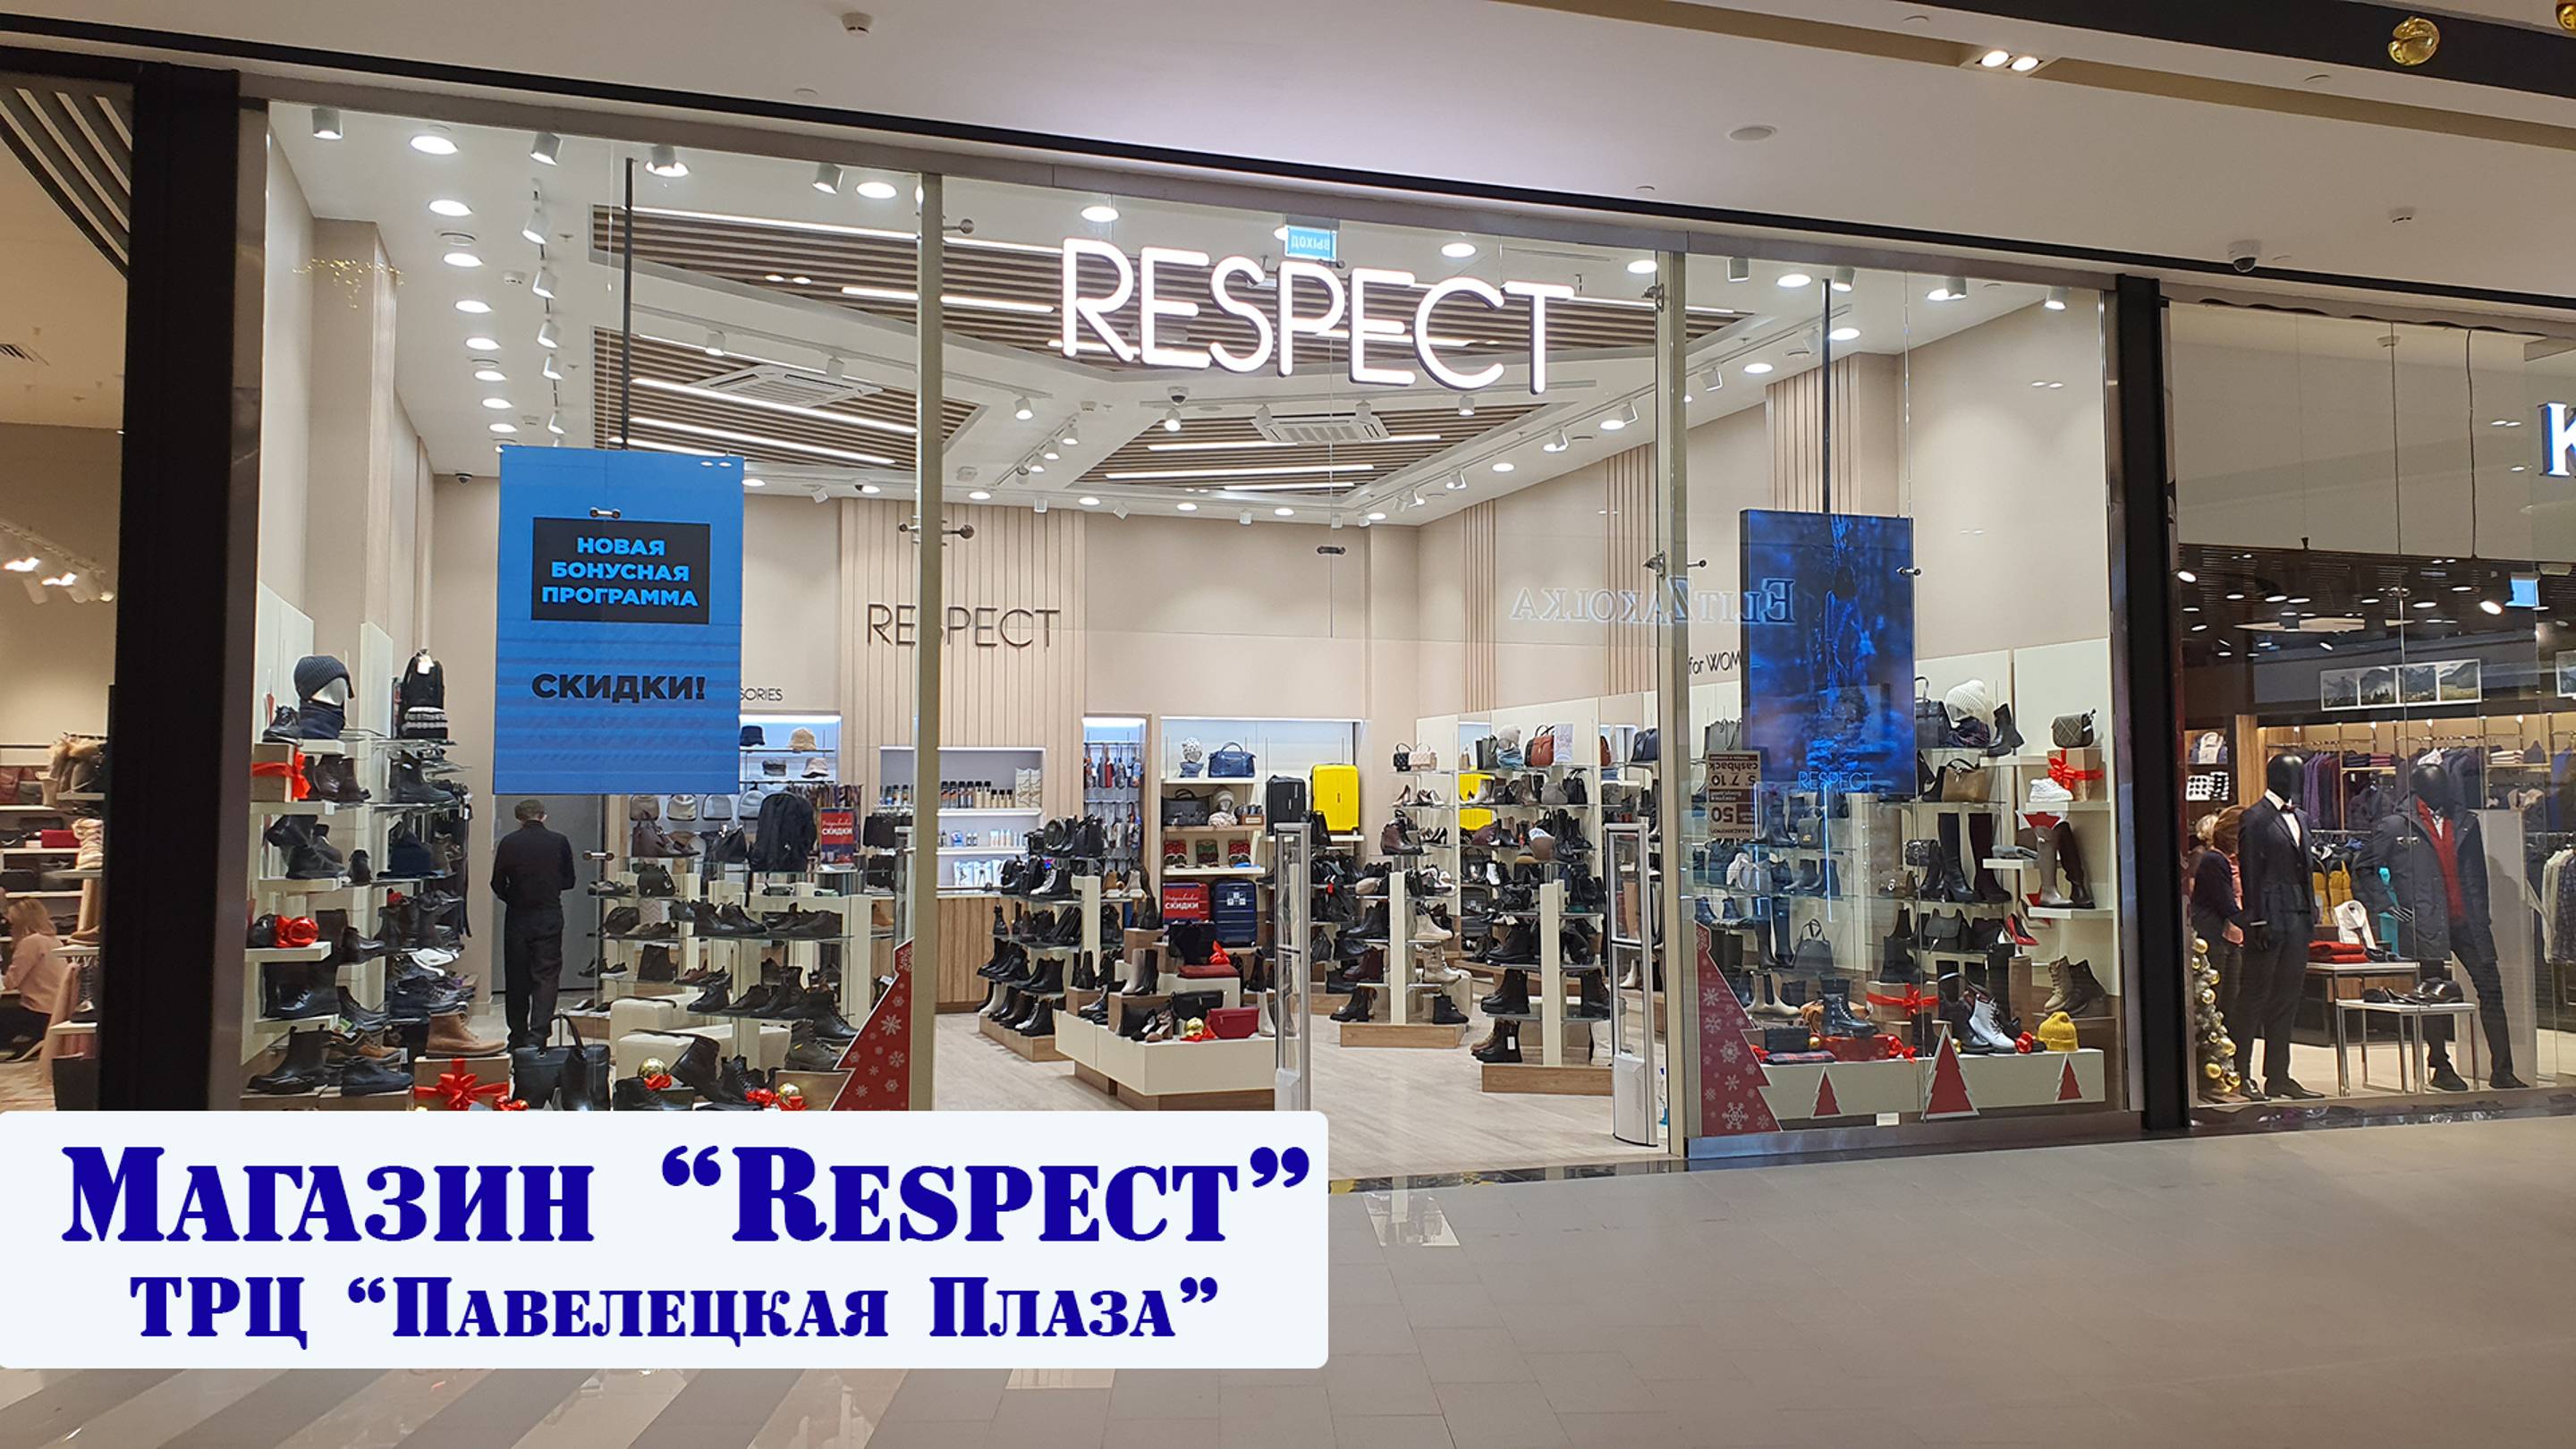 Магазин "Respect". Visual System. ТРЦ "Павелецкая Плаза" Светодиодный Led экран (для ритейла)